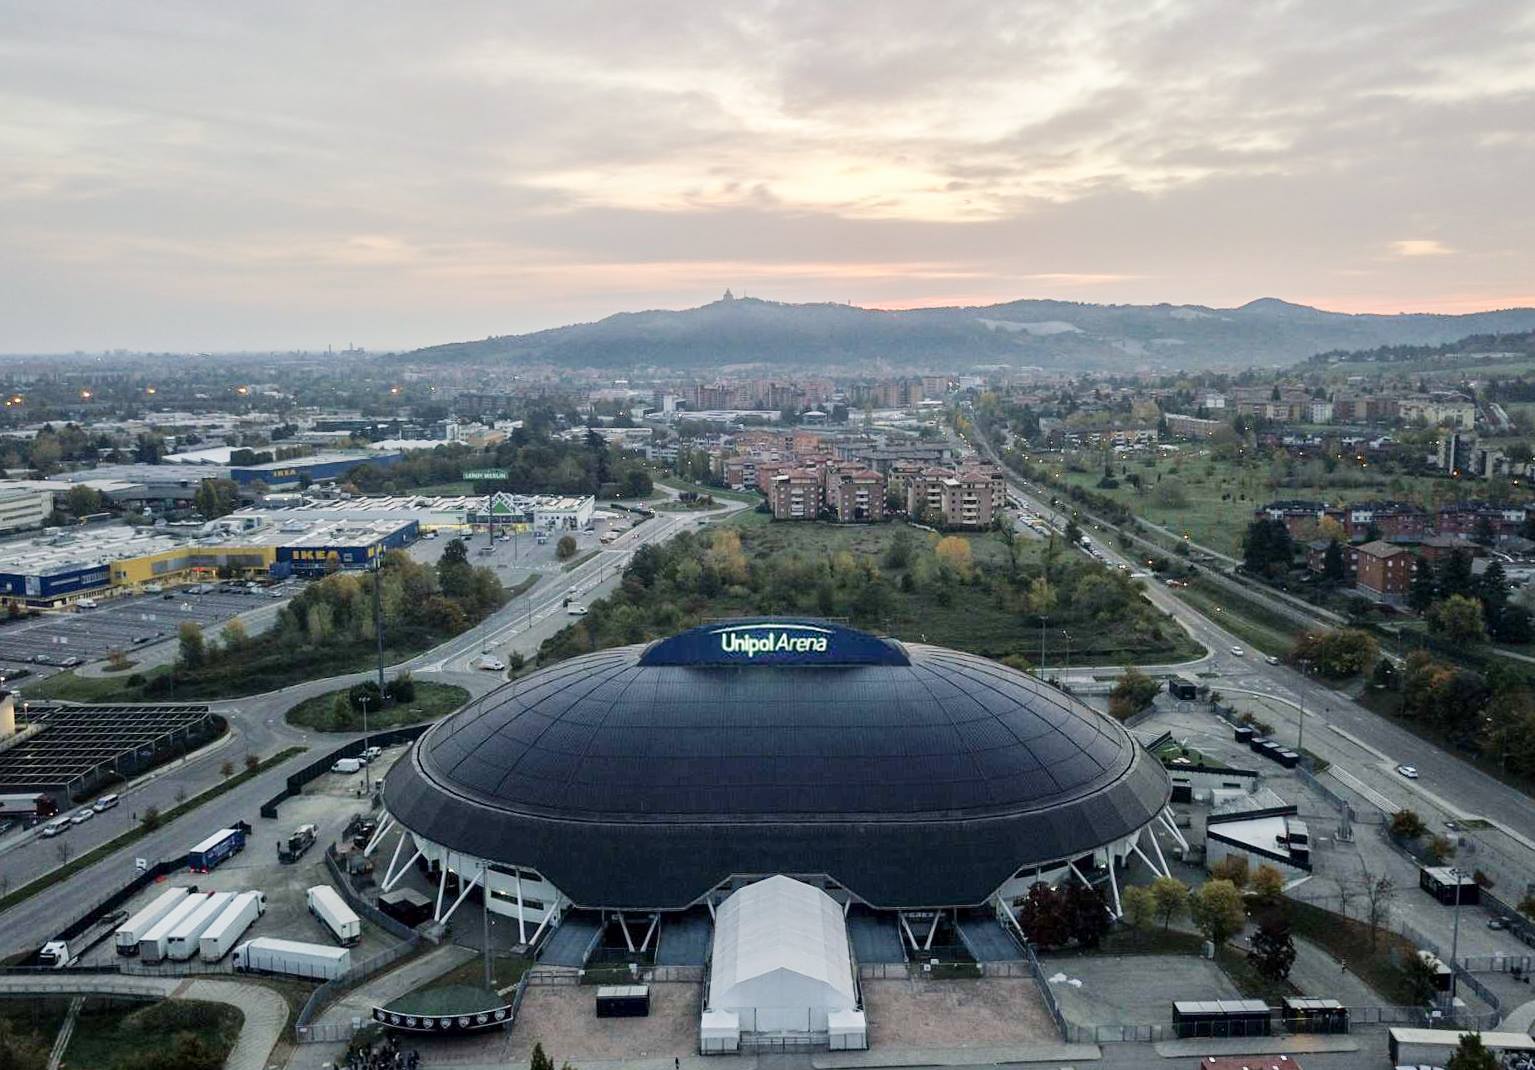 La splendida vista dall’alto dell’Unipol Arena e la città di Bologna